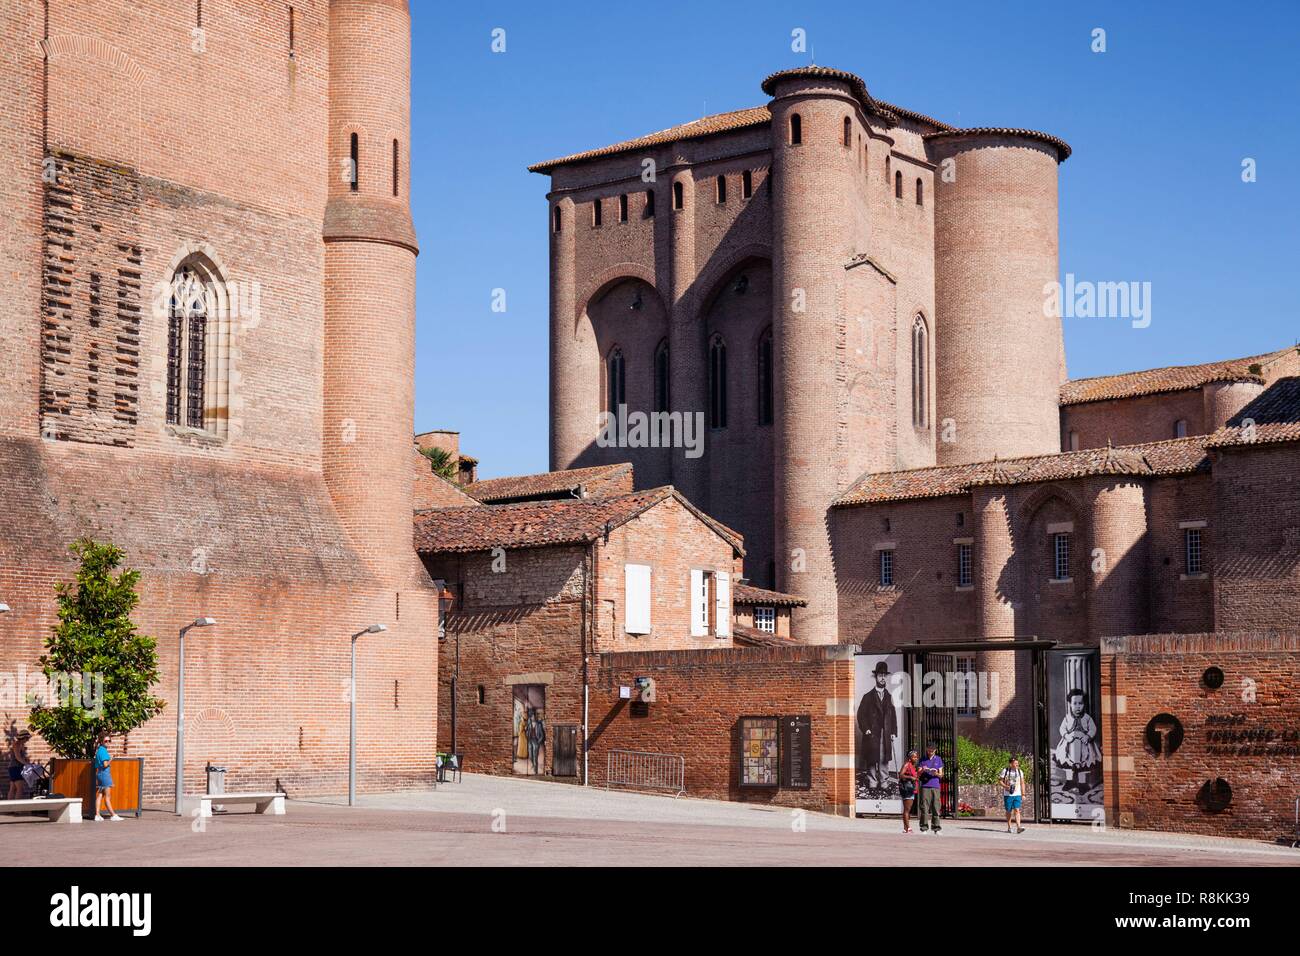 Francia, Tarn, Albi, la città episcopale, classificato come patrimonio mondiale dall UNESCO, il Palais de la Berbie che contiene il al museo di Toulouse Lautrec Foto Stock